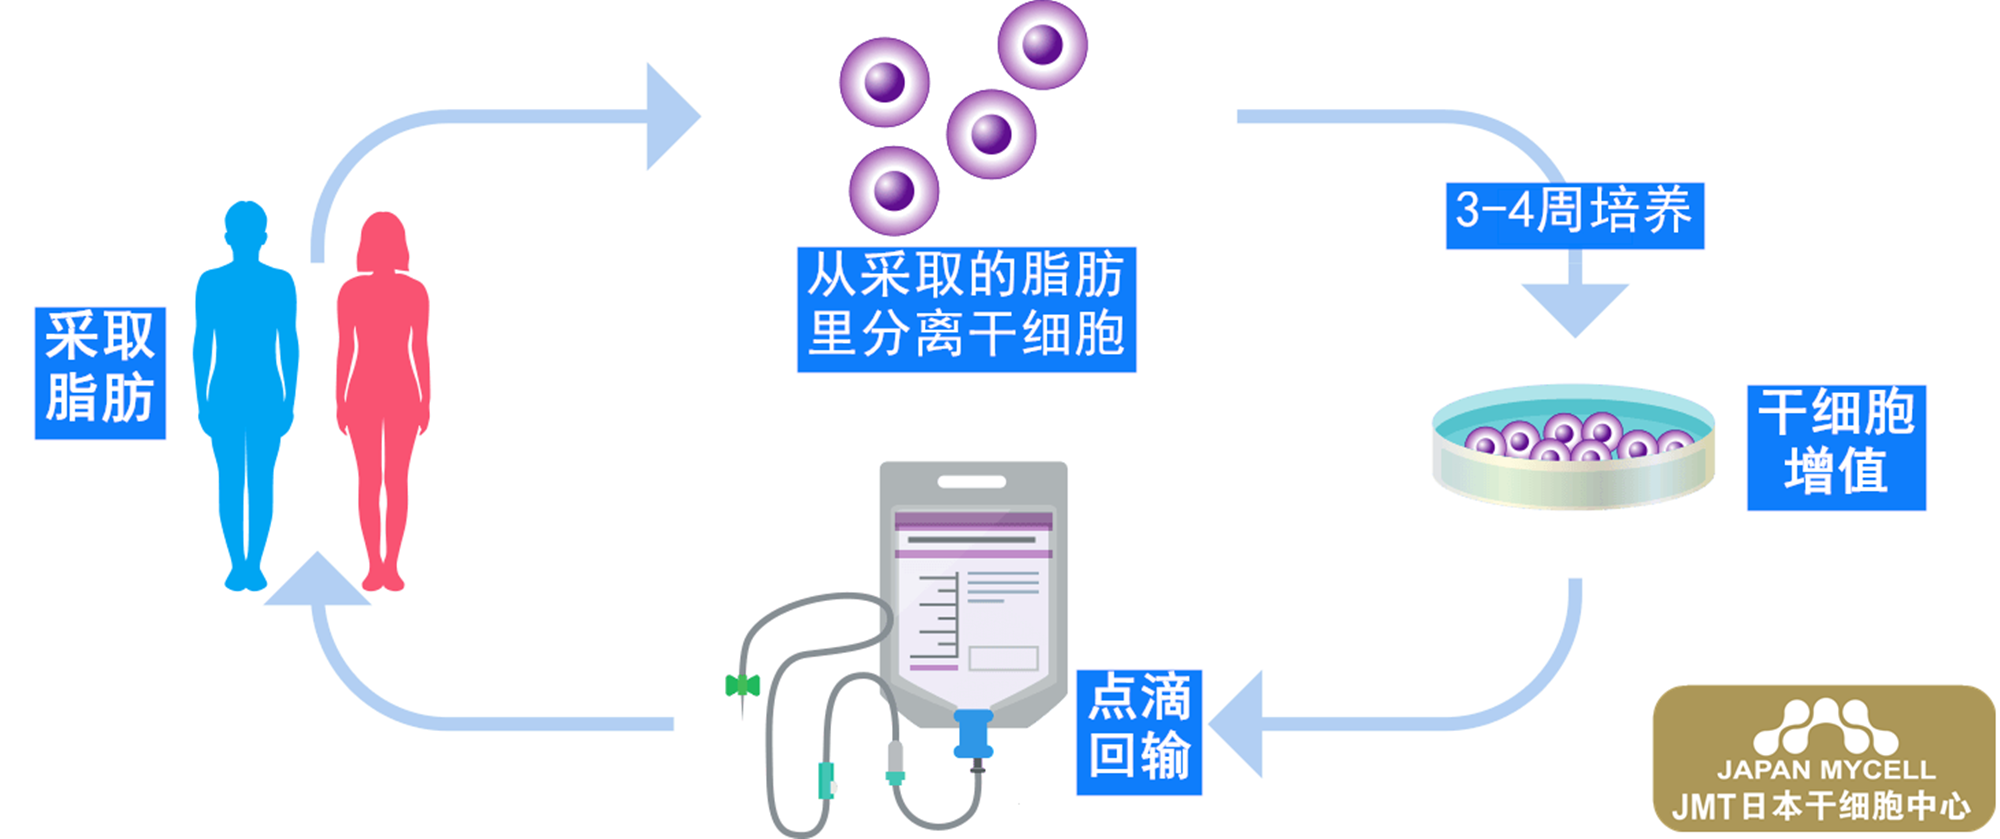 慢性肾脏病肾功能不全的概述及导致问题-日本干细胞如何治疗